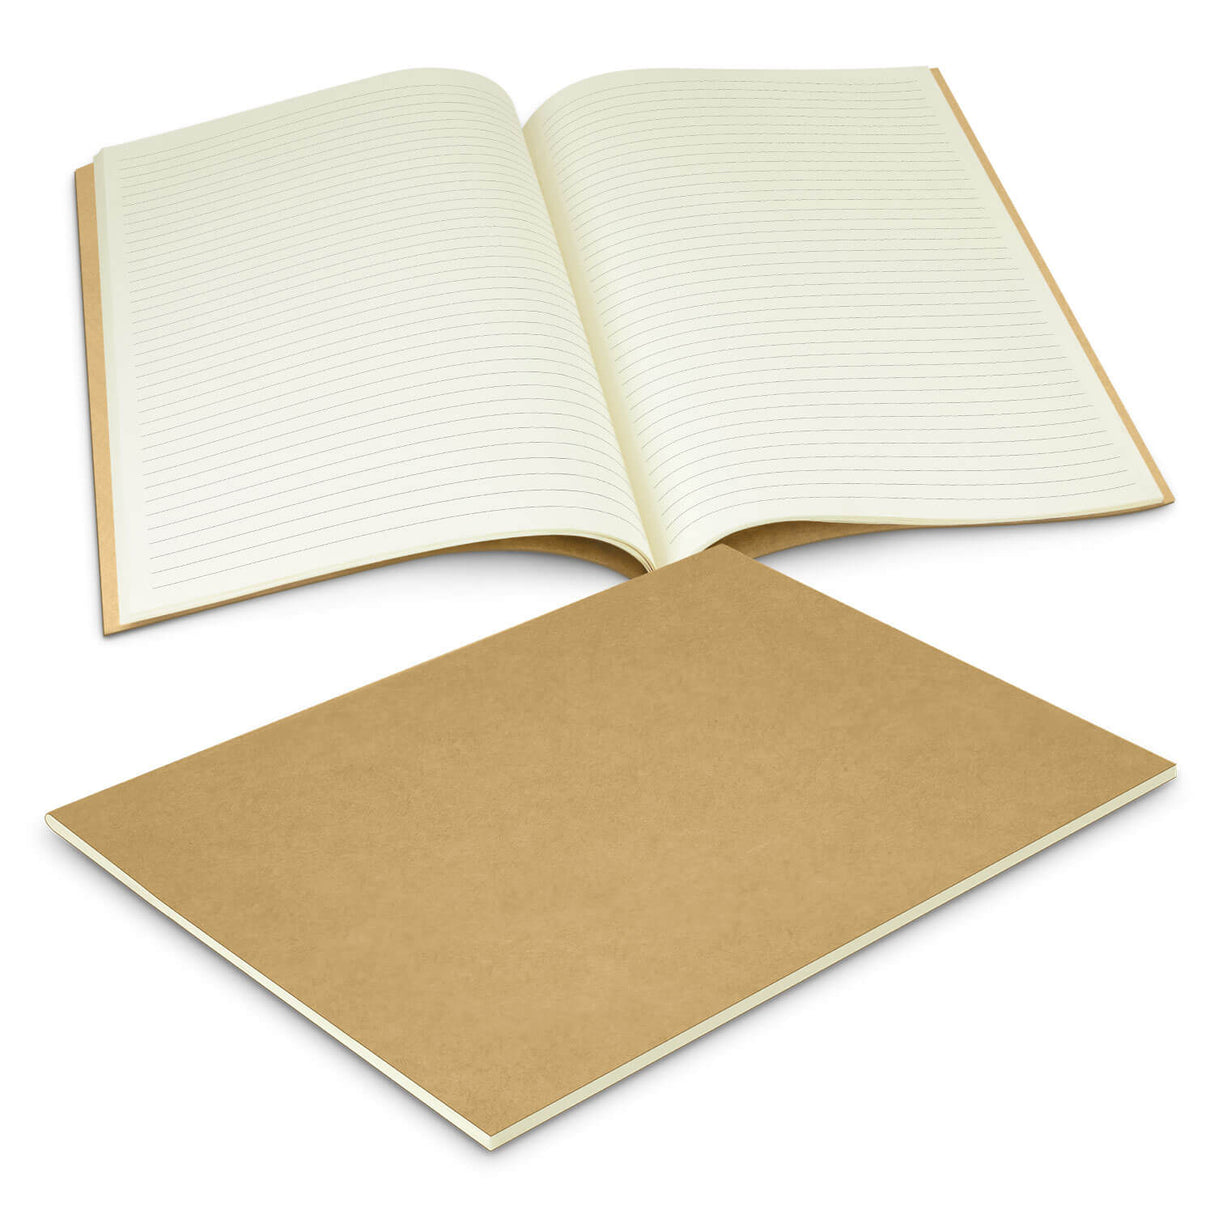 Kora Notebook Large - Printed